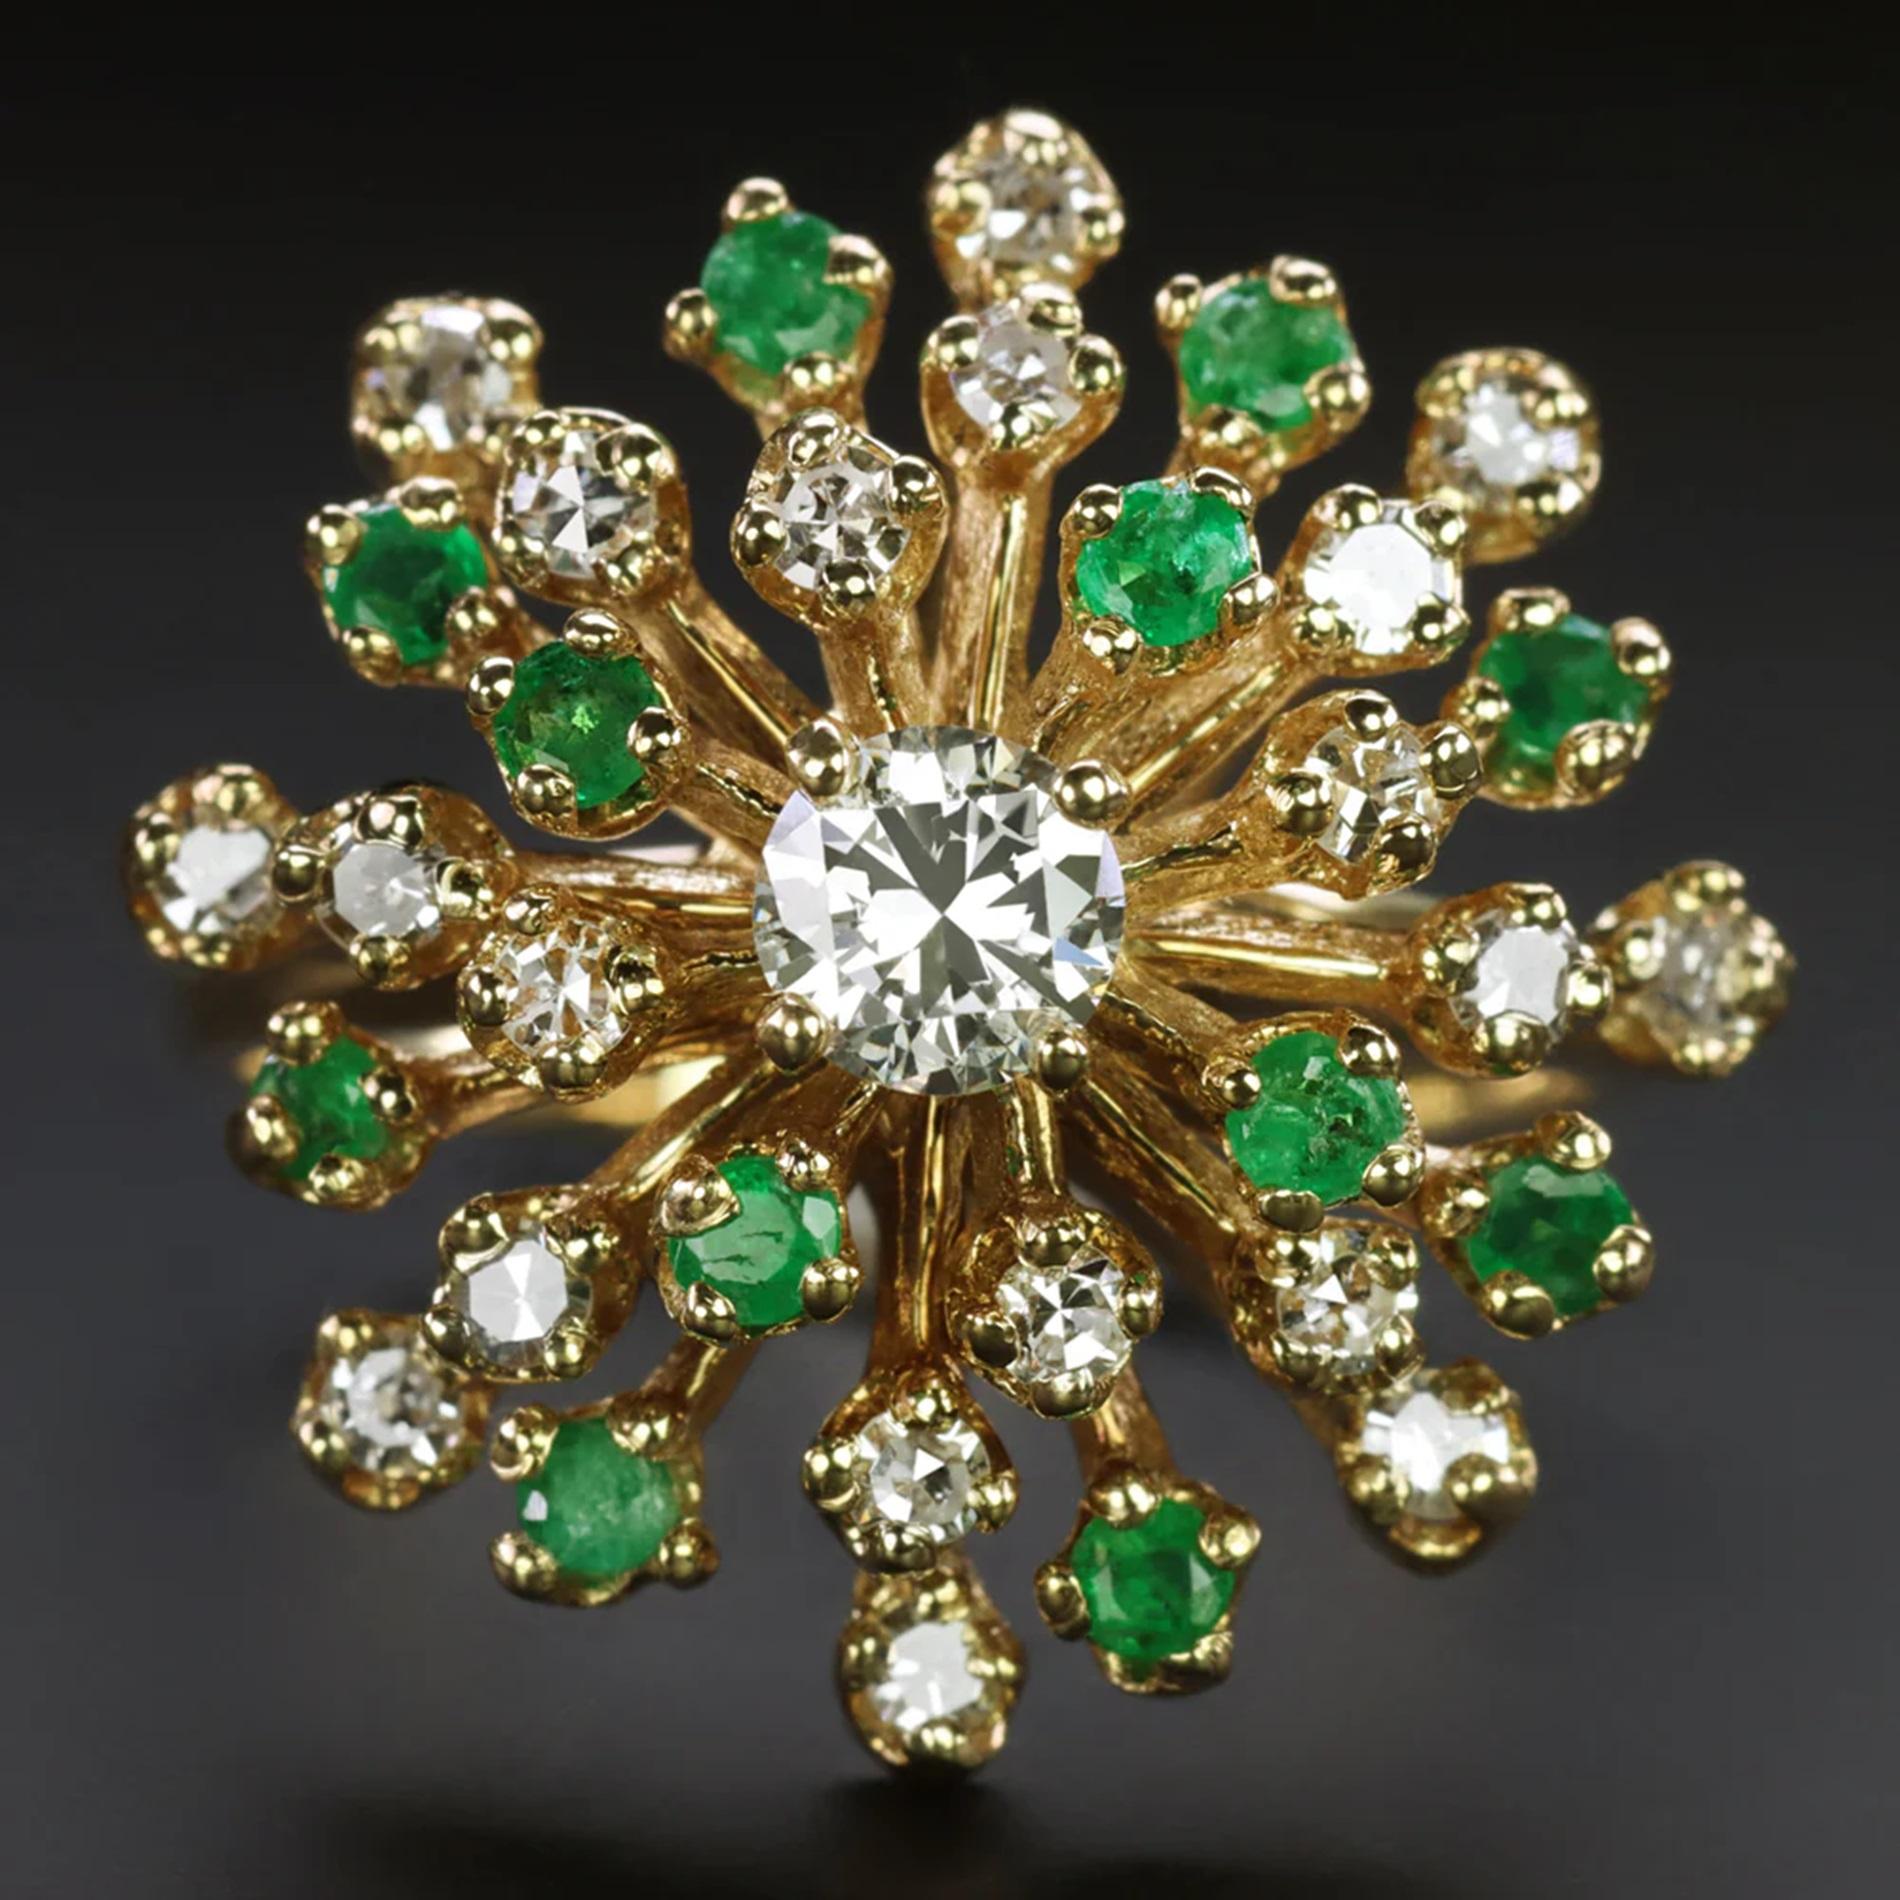 Ein faszinierender Vintage-Ring mit einem strahlenden Cluster aus Diamanten und Smaragden, die sich um einen leuchtenden Diamanten in der Mitte gruppieren. Jede Ebene dieses einzigartigen Designs dreht sich teilweise und erzeugt so einen